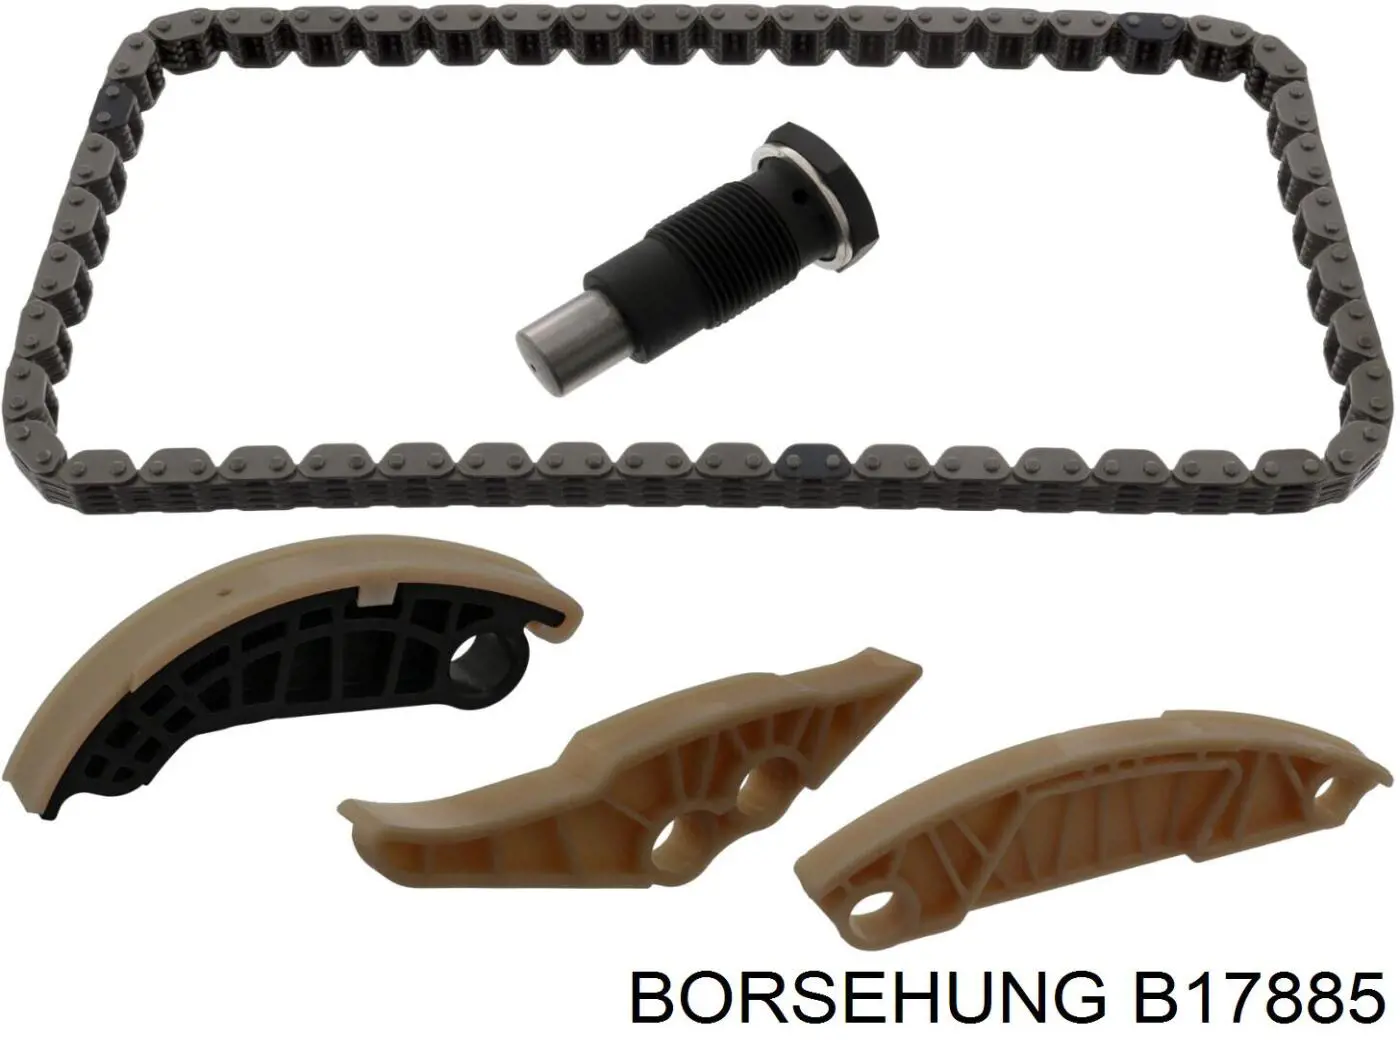 B17885 Borsehung cadeia inferior do mecanismo de distribuição de gás